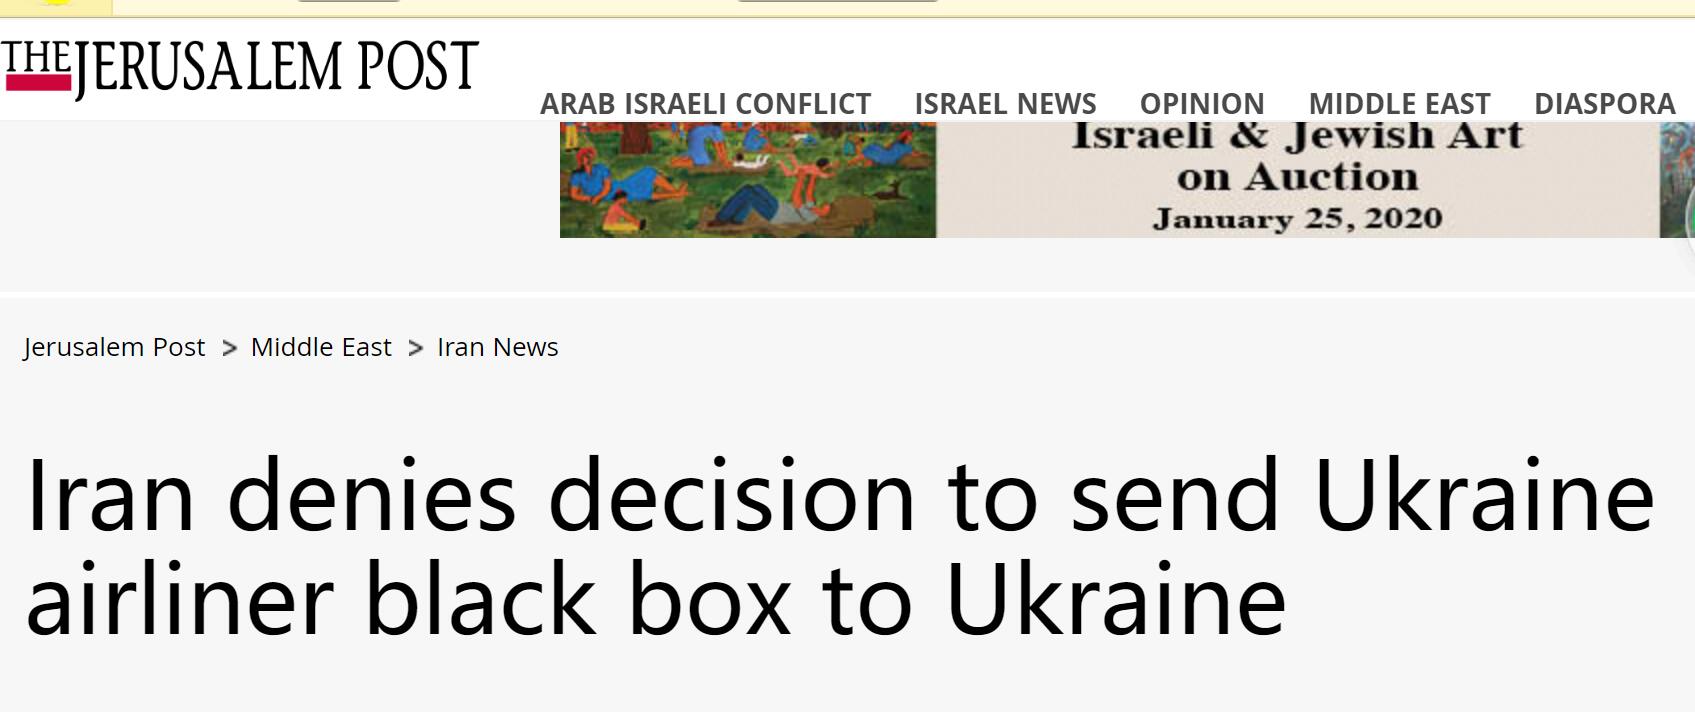 伊朗否认向乌克兰移交黑匣子